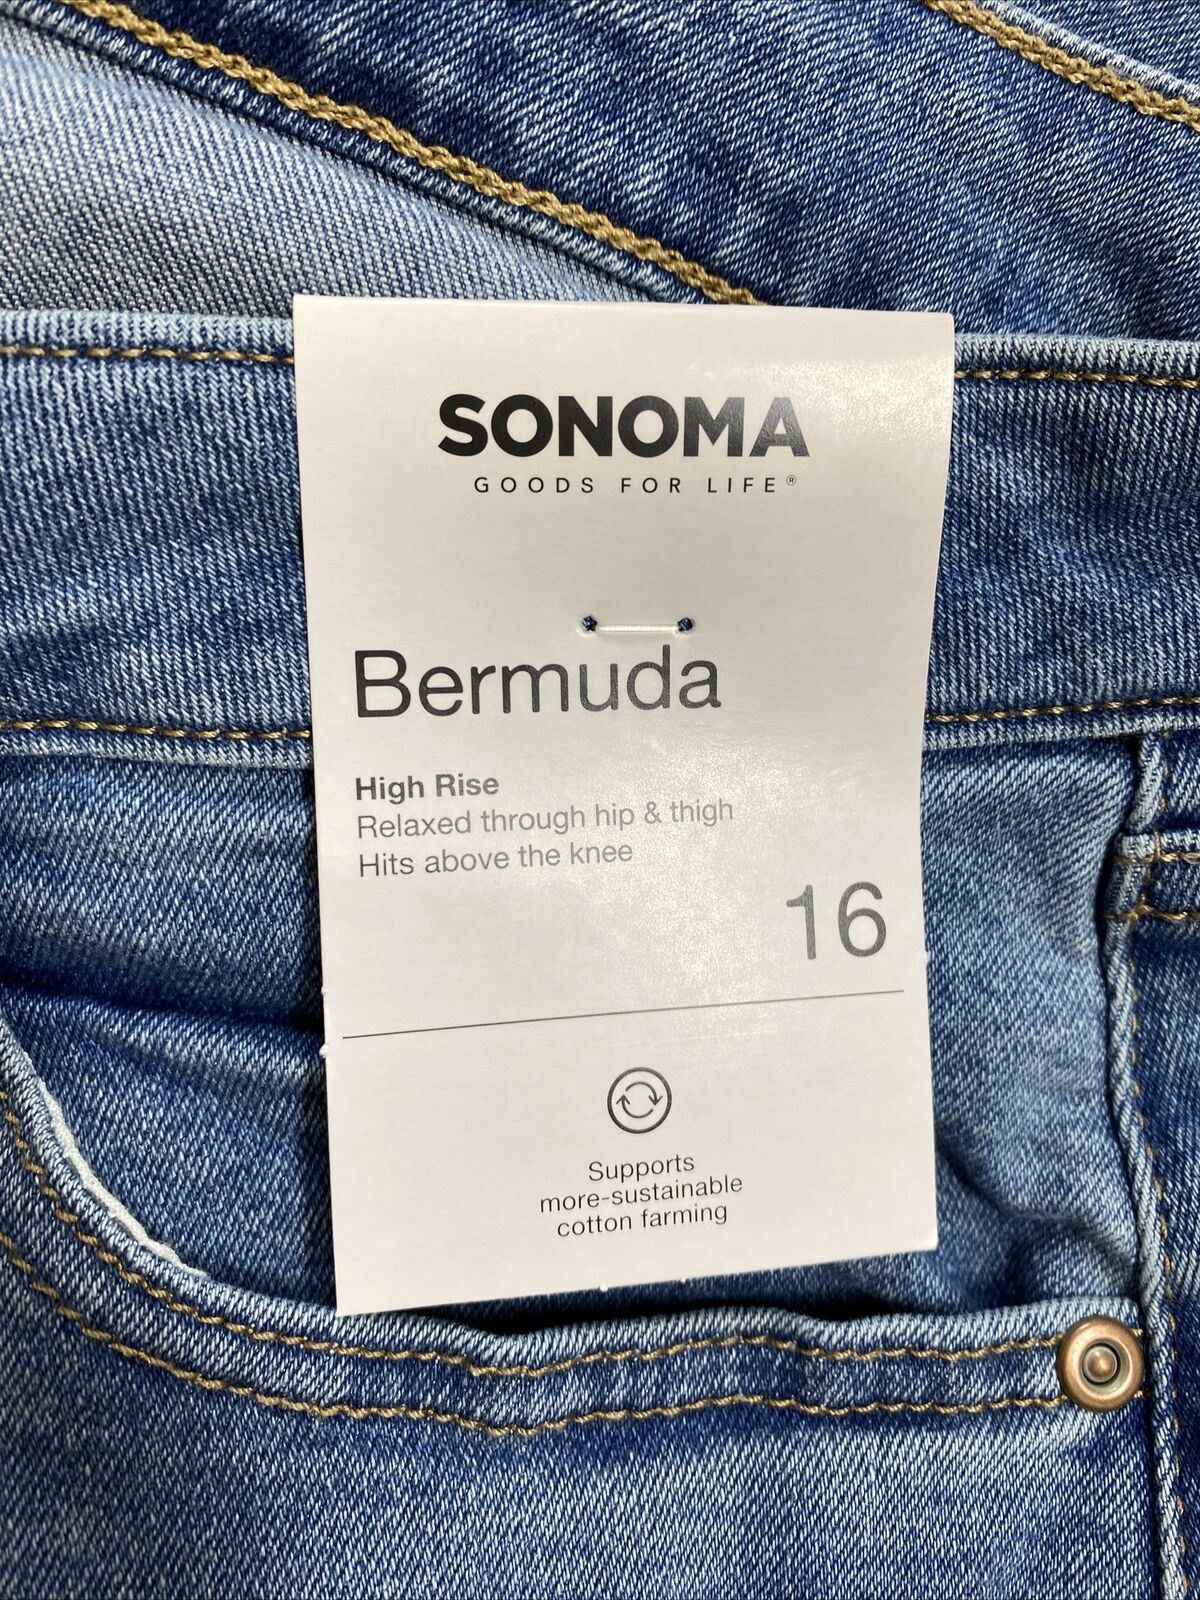 NUEVOS pantalones cortos vaqueros tipo bermuda de talle alto y lavado claro para mujer Sonoma - 16